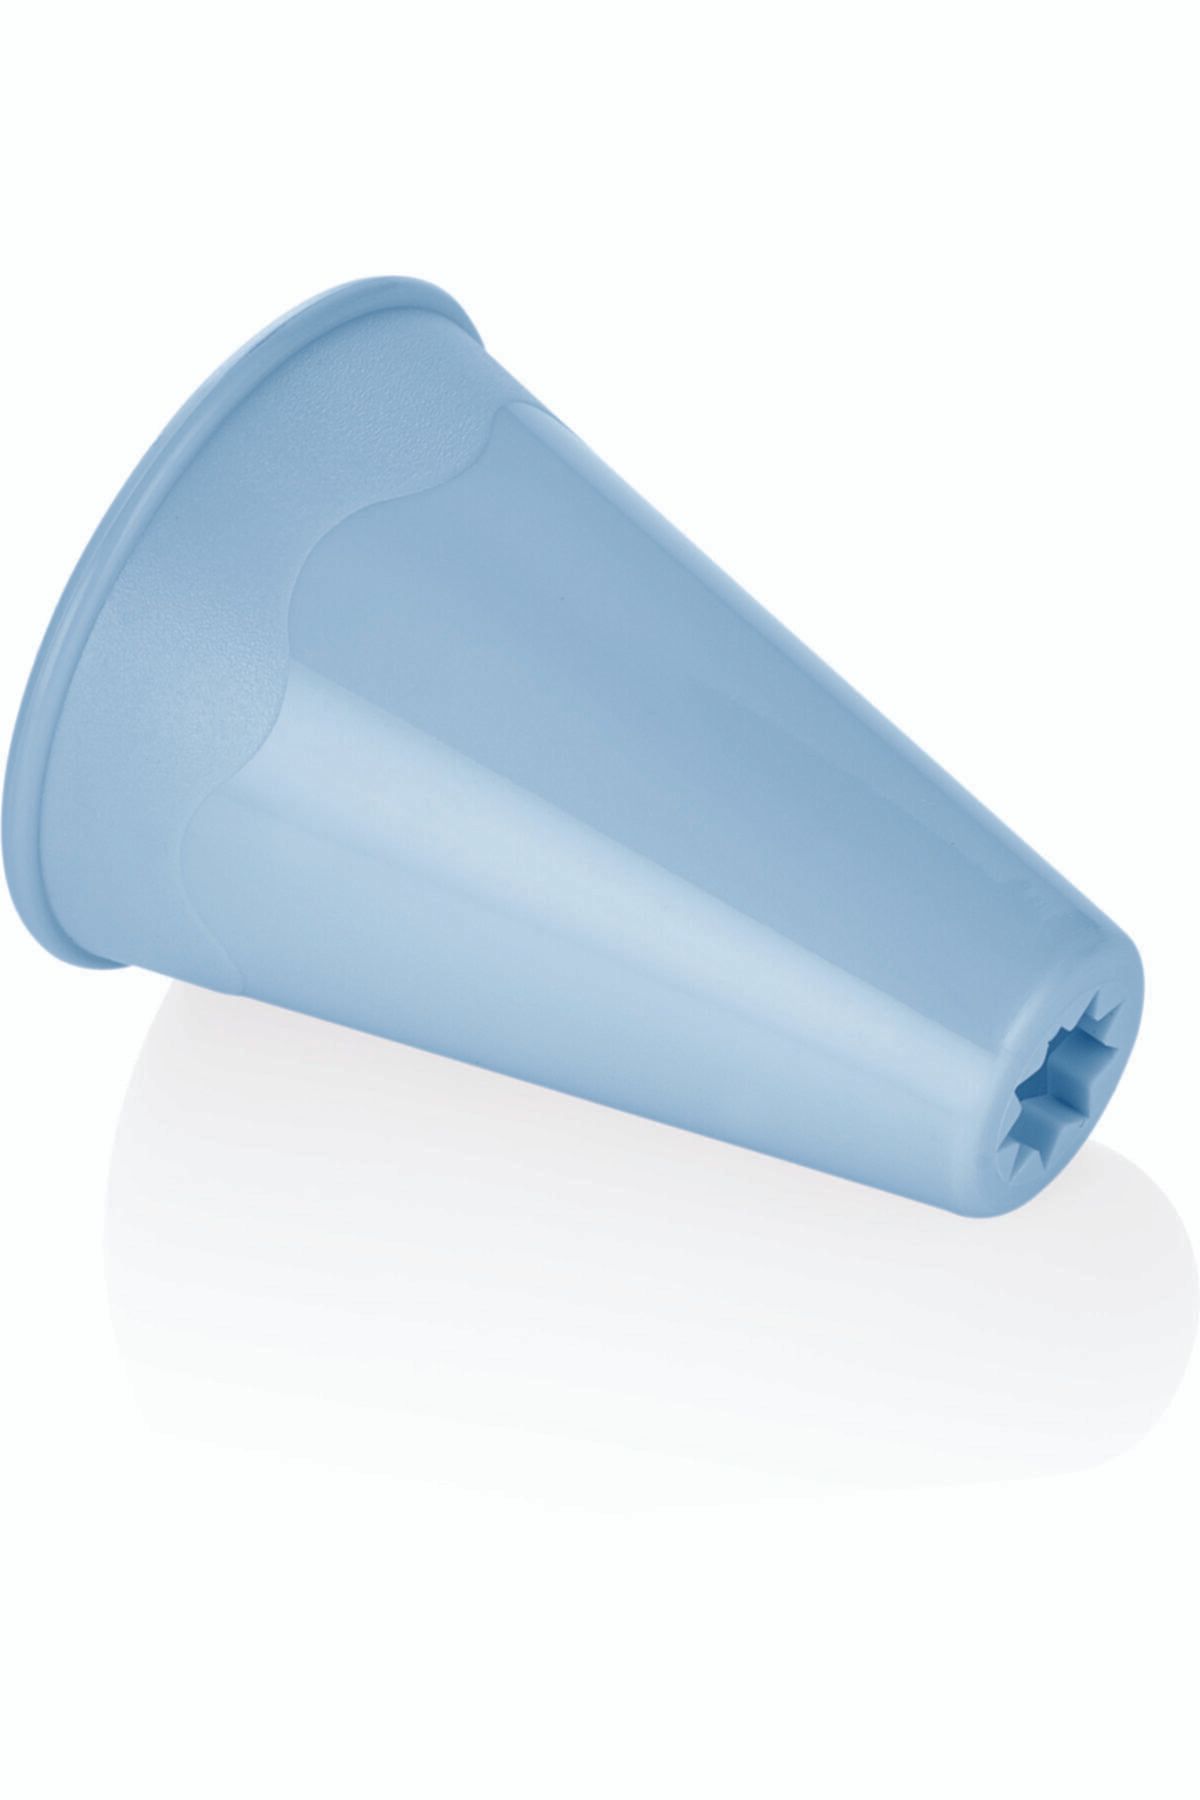 Bager Plastik Tırtıl Kurabiye Kalıbı Mavi